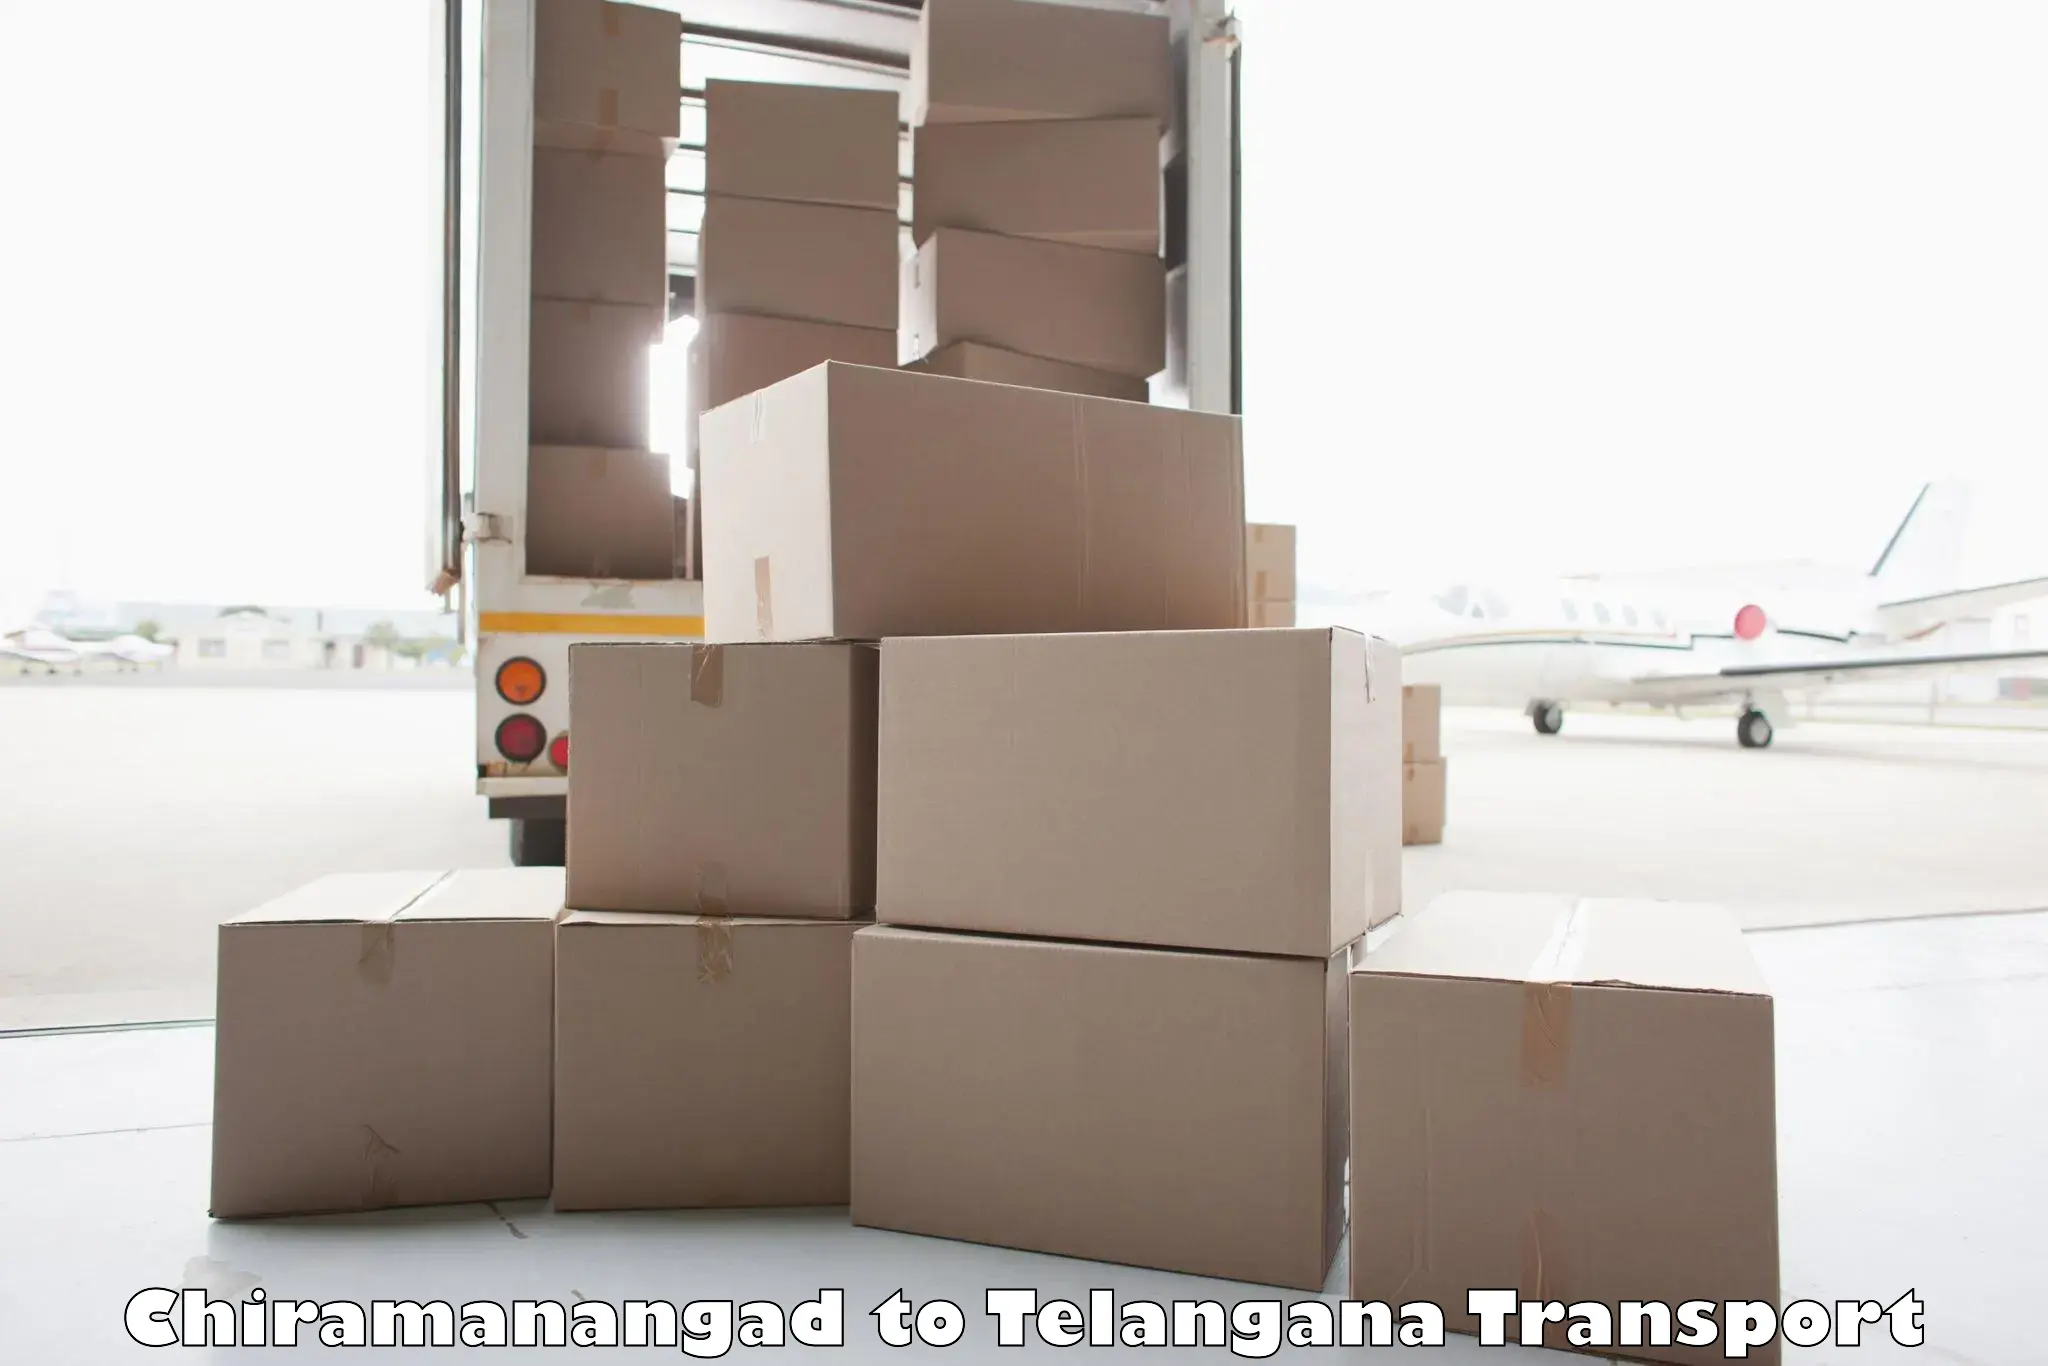 Furniture transport service Chiramanangad to Nereducharla